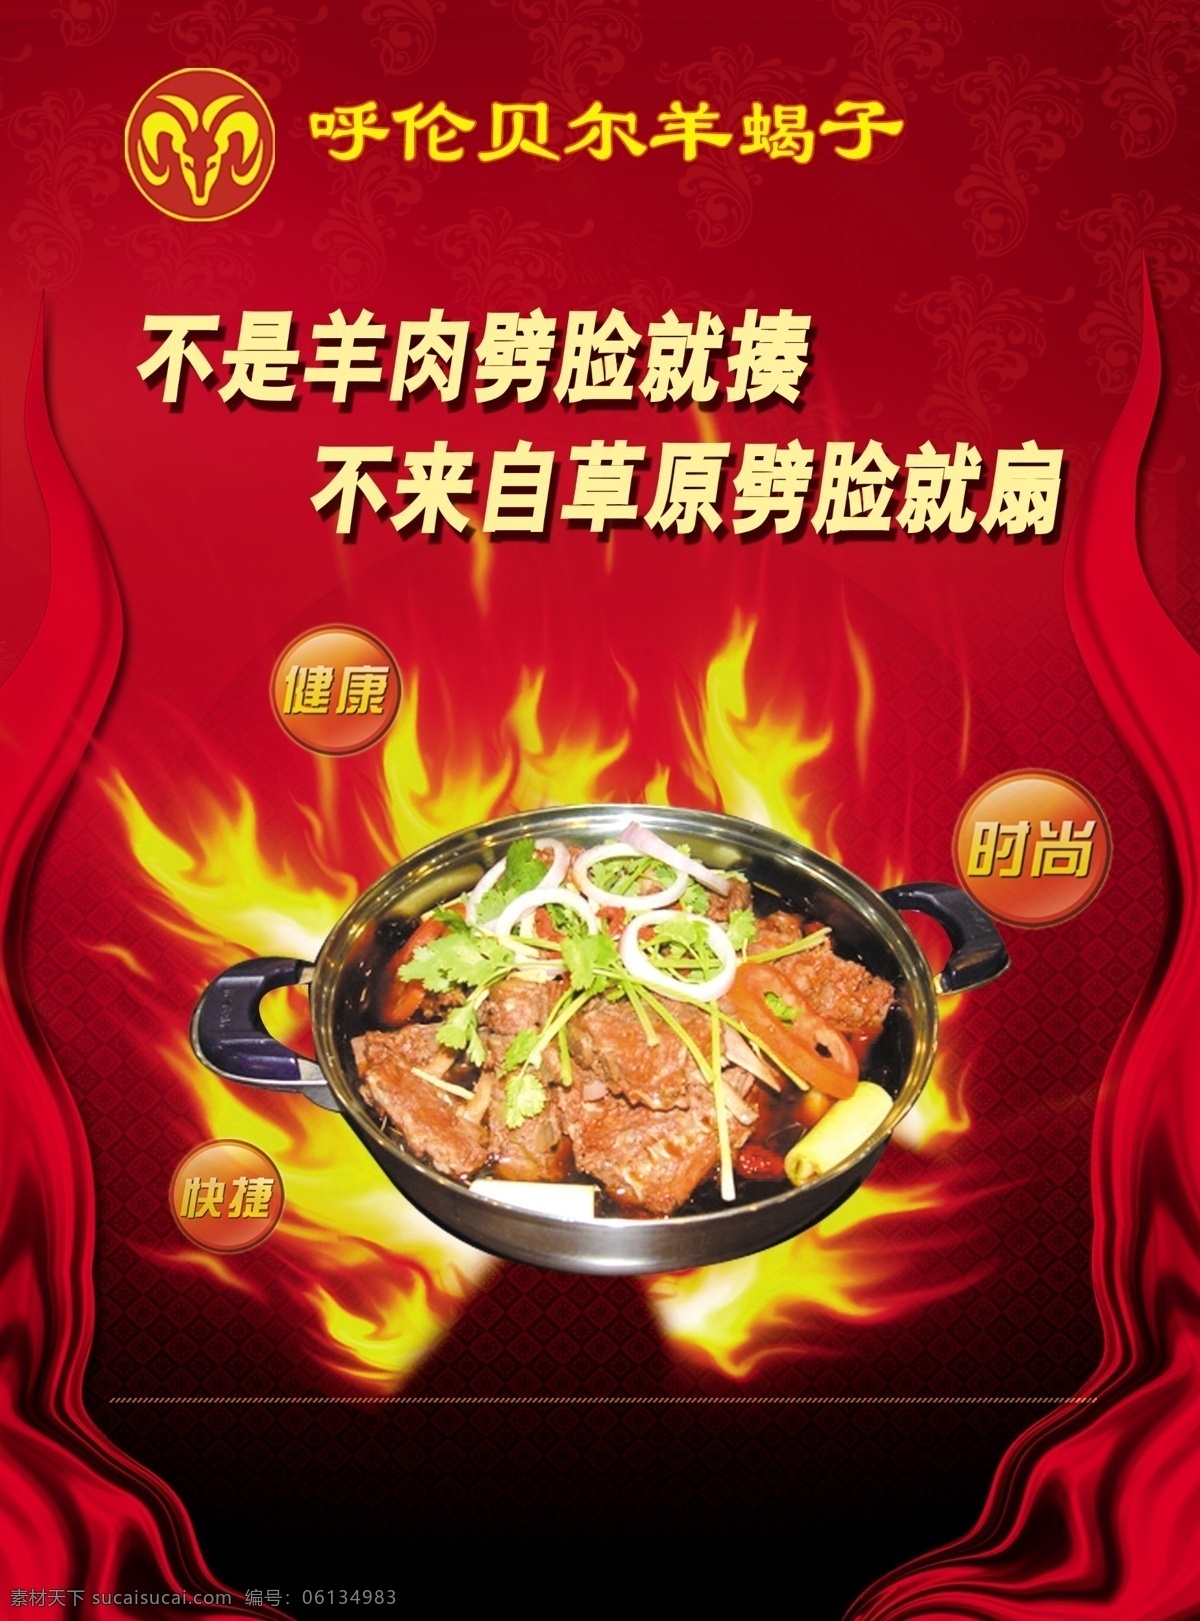 火锅彩页 红色背景 火背景 海报 宣传单 羊蝎子火锅 菜单菜谱